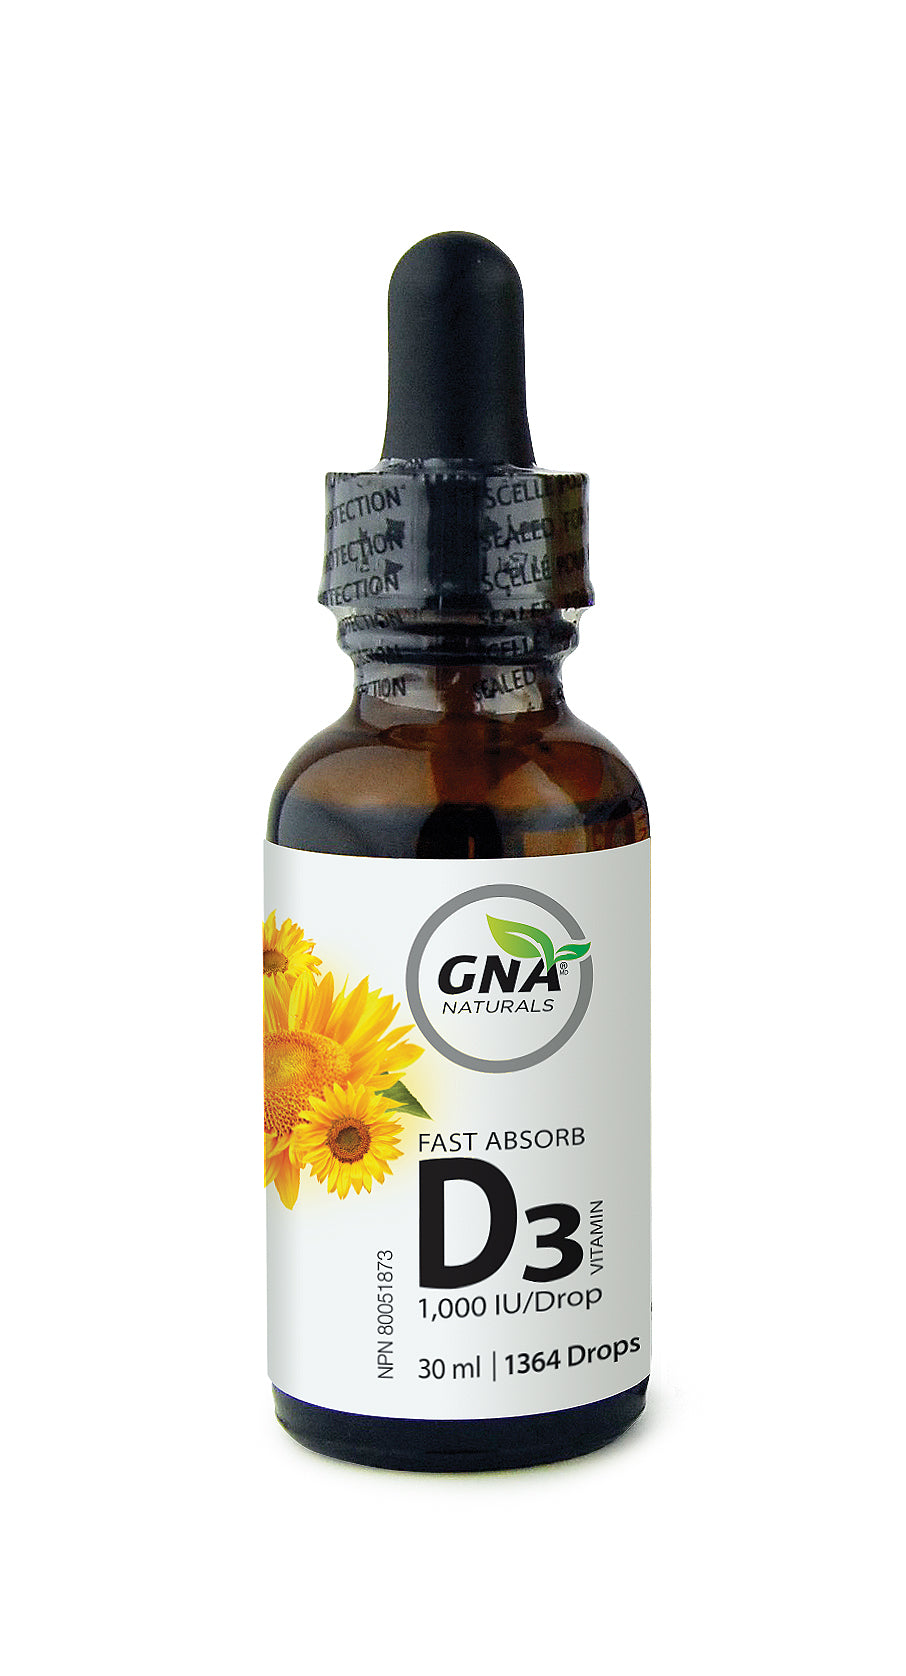 Vitamin D3 1000 IU Liquid Drops Supplement for Strong Bones & Structural Support